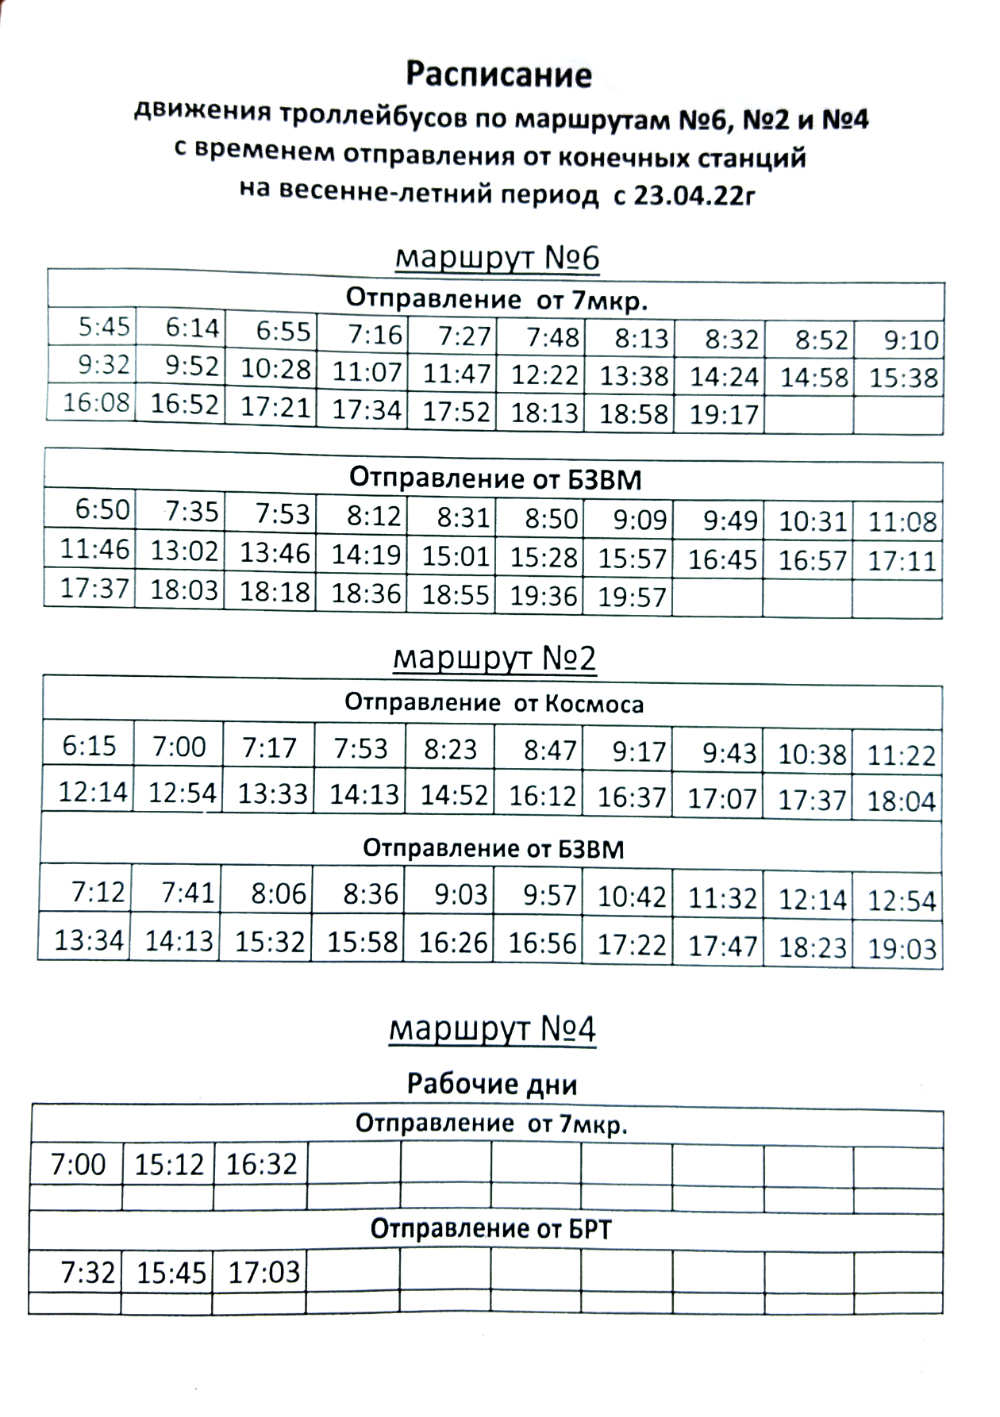 Расписание троллейбуса 7а